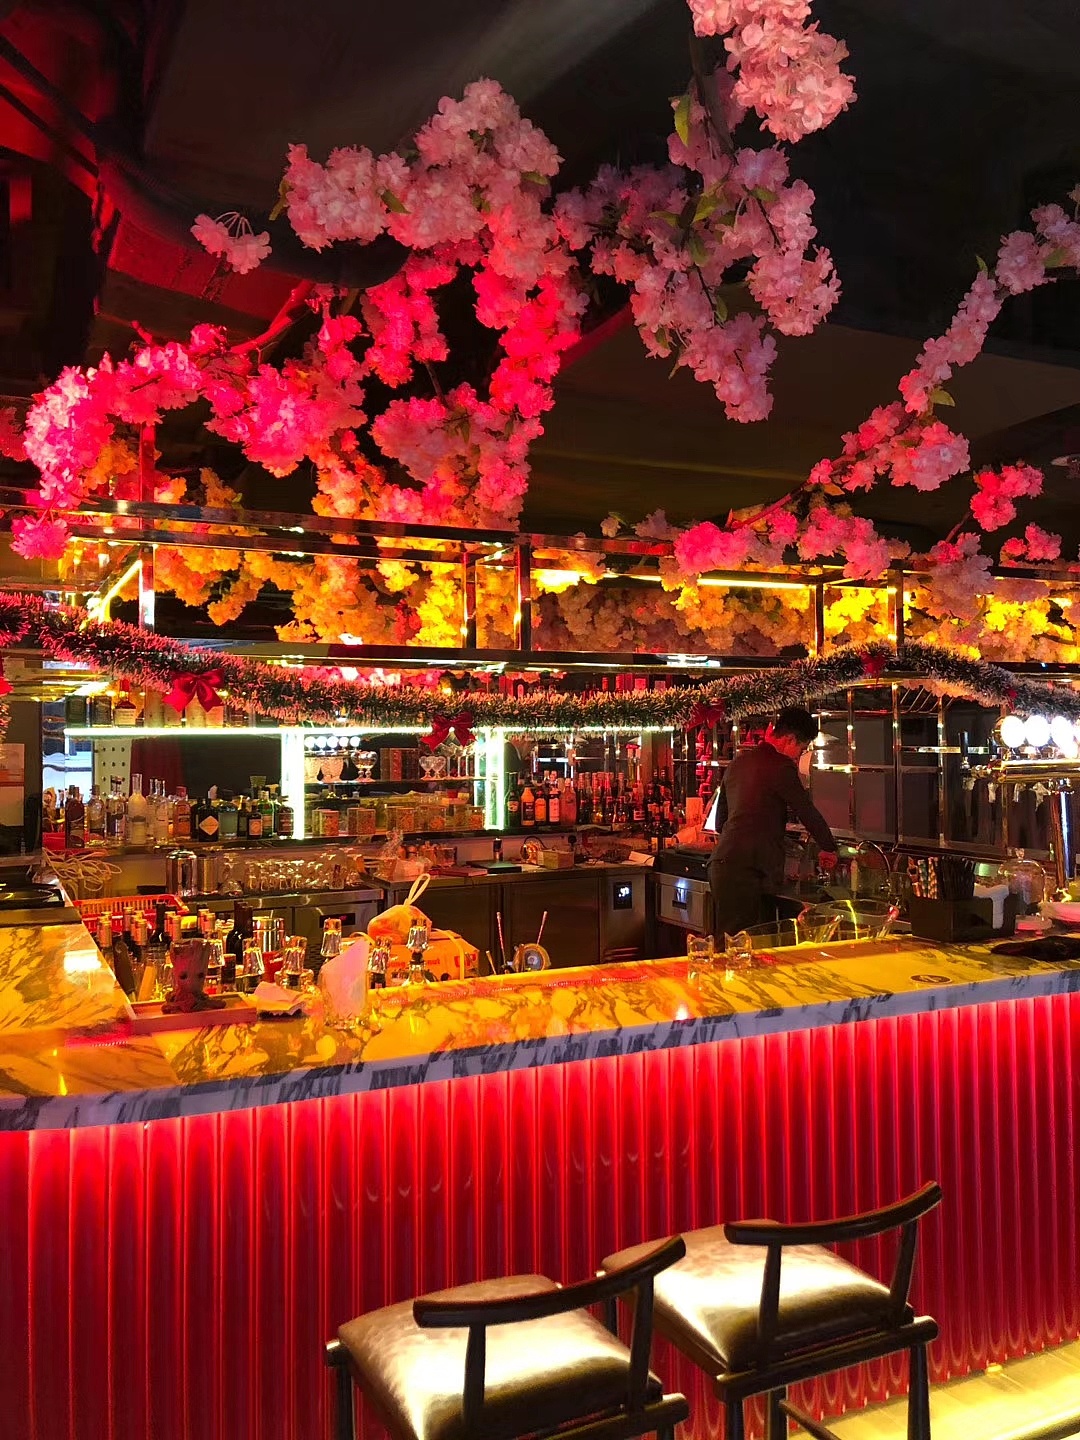 10张香港兰桂坊酒吧图片欣赏-中国木业网